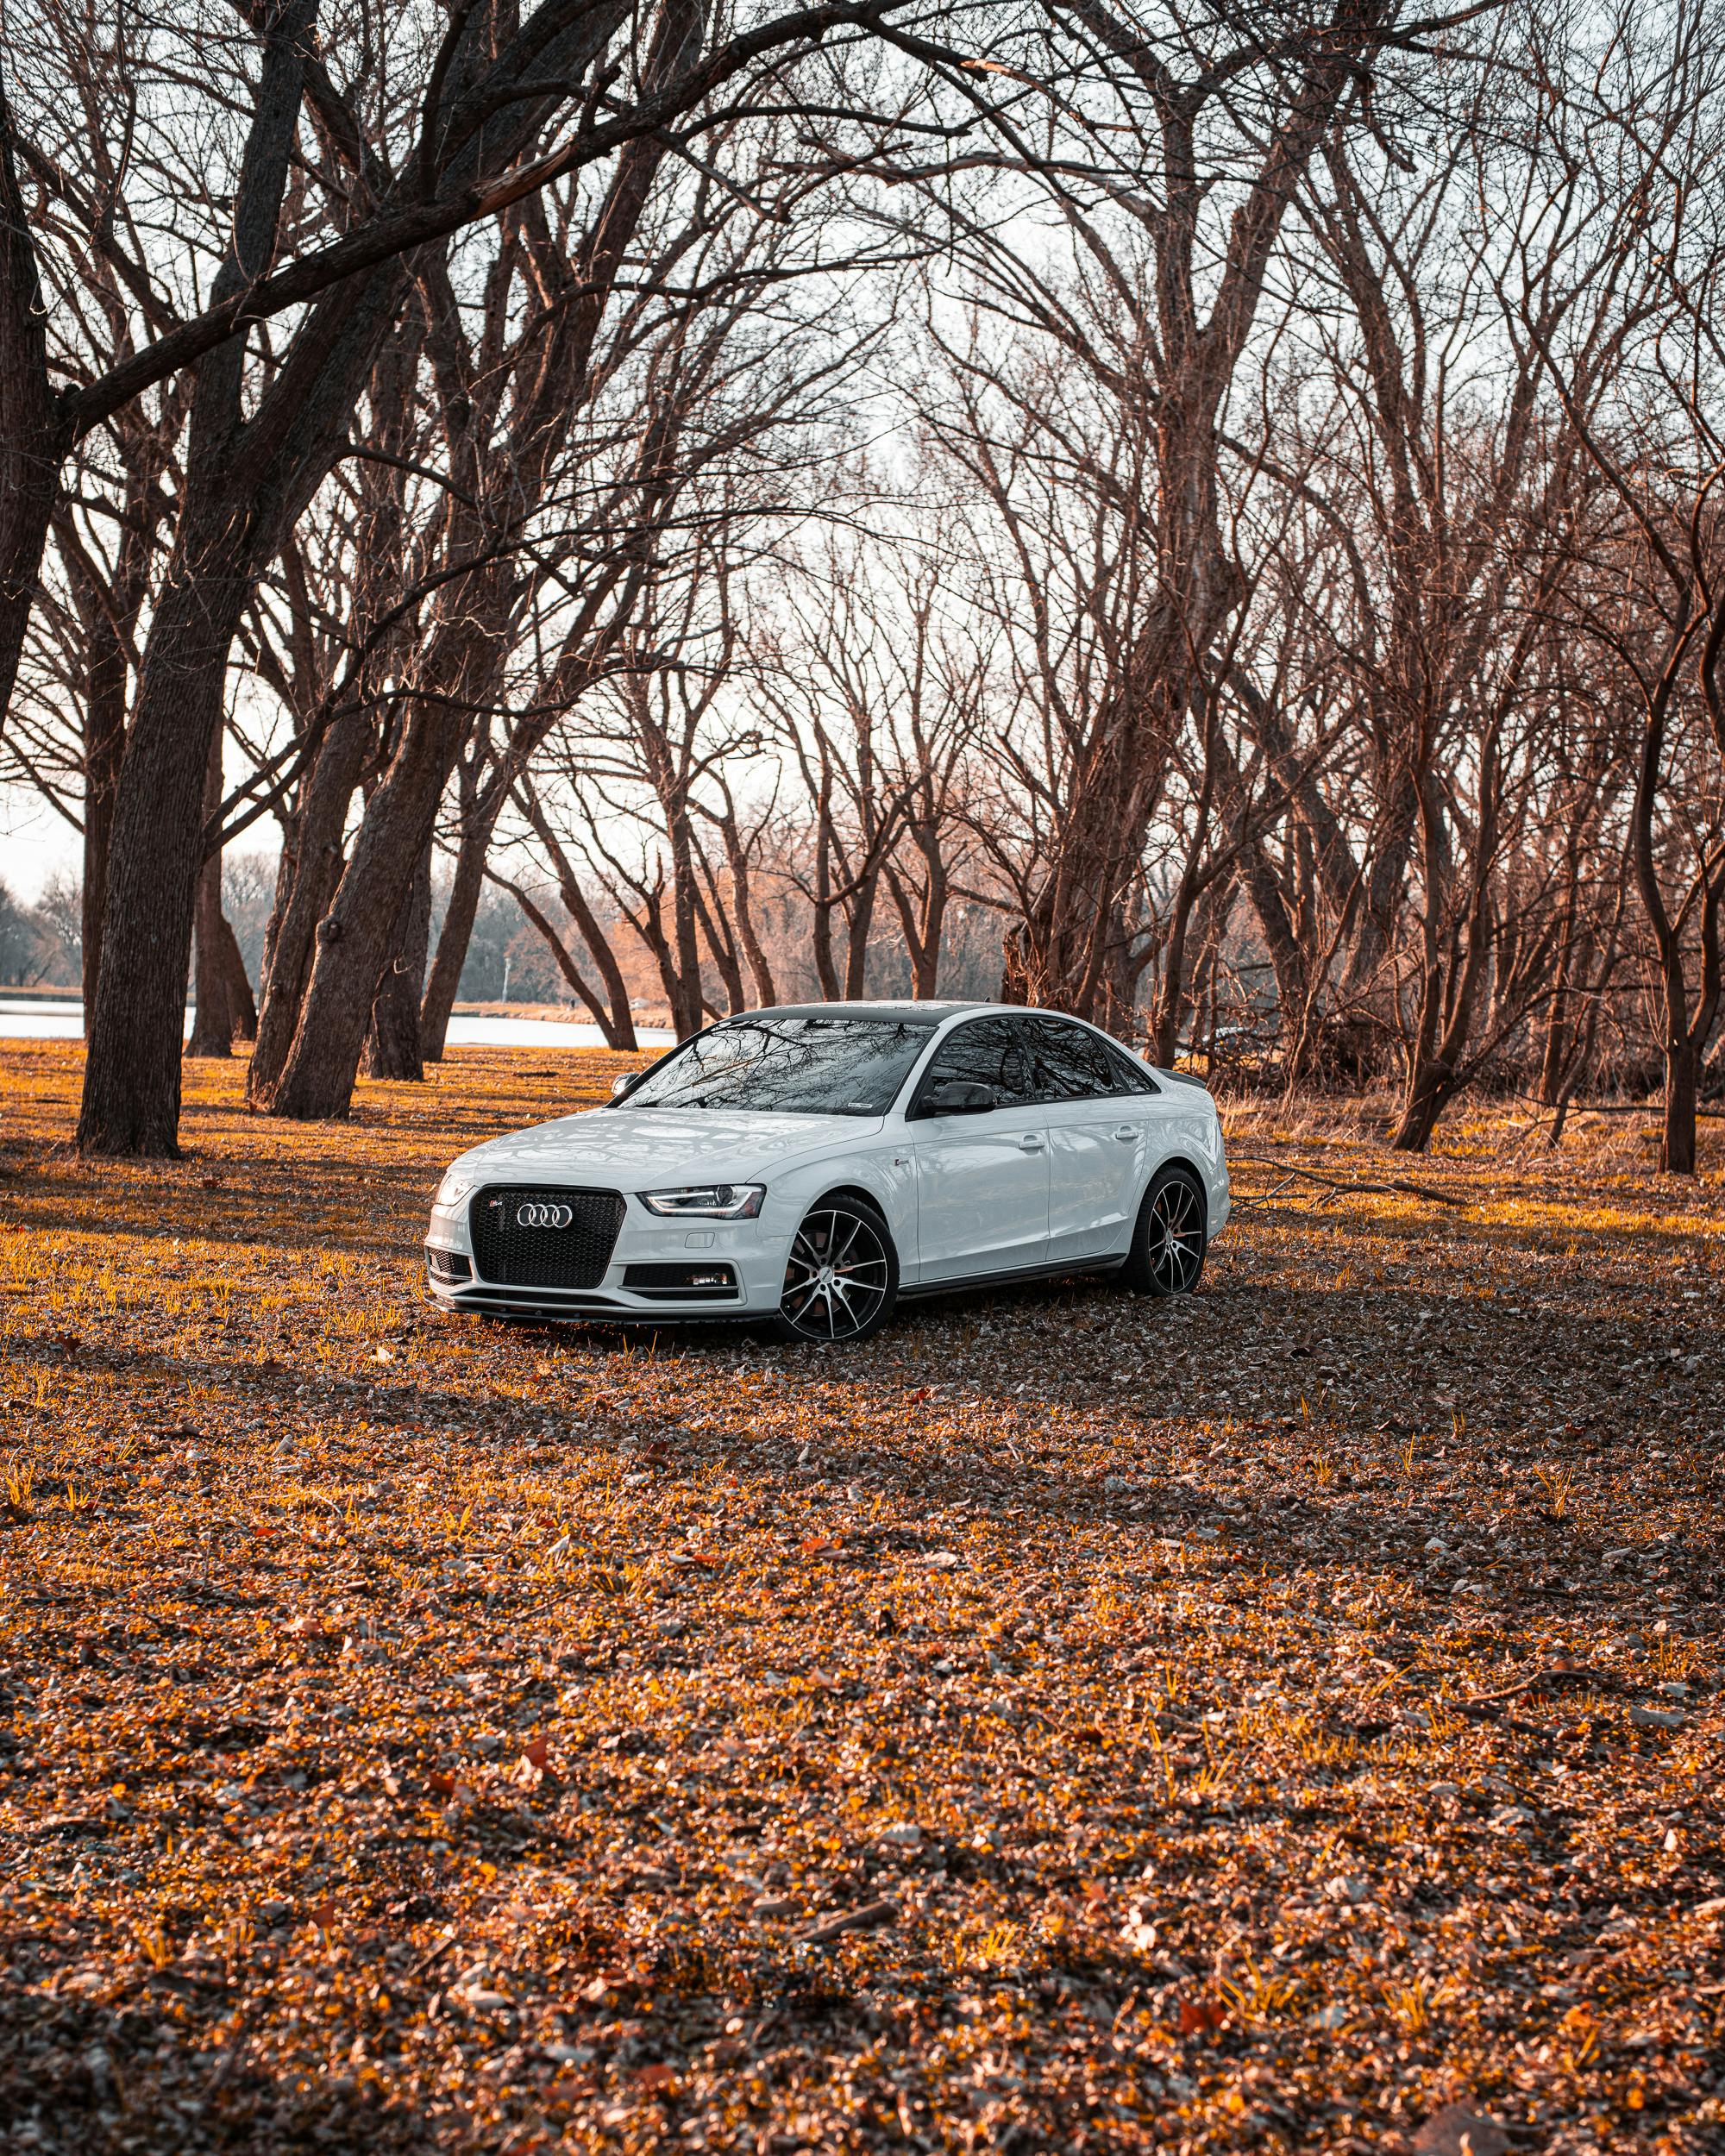 Audi Xe Thể Thao Ô Tô - Ảnh miễn phí trên Pixabay - Pixabay